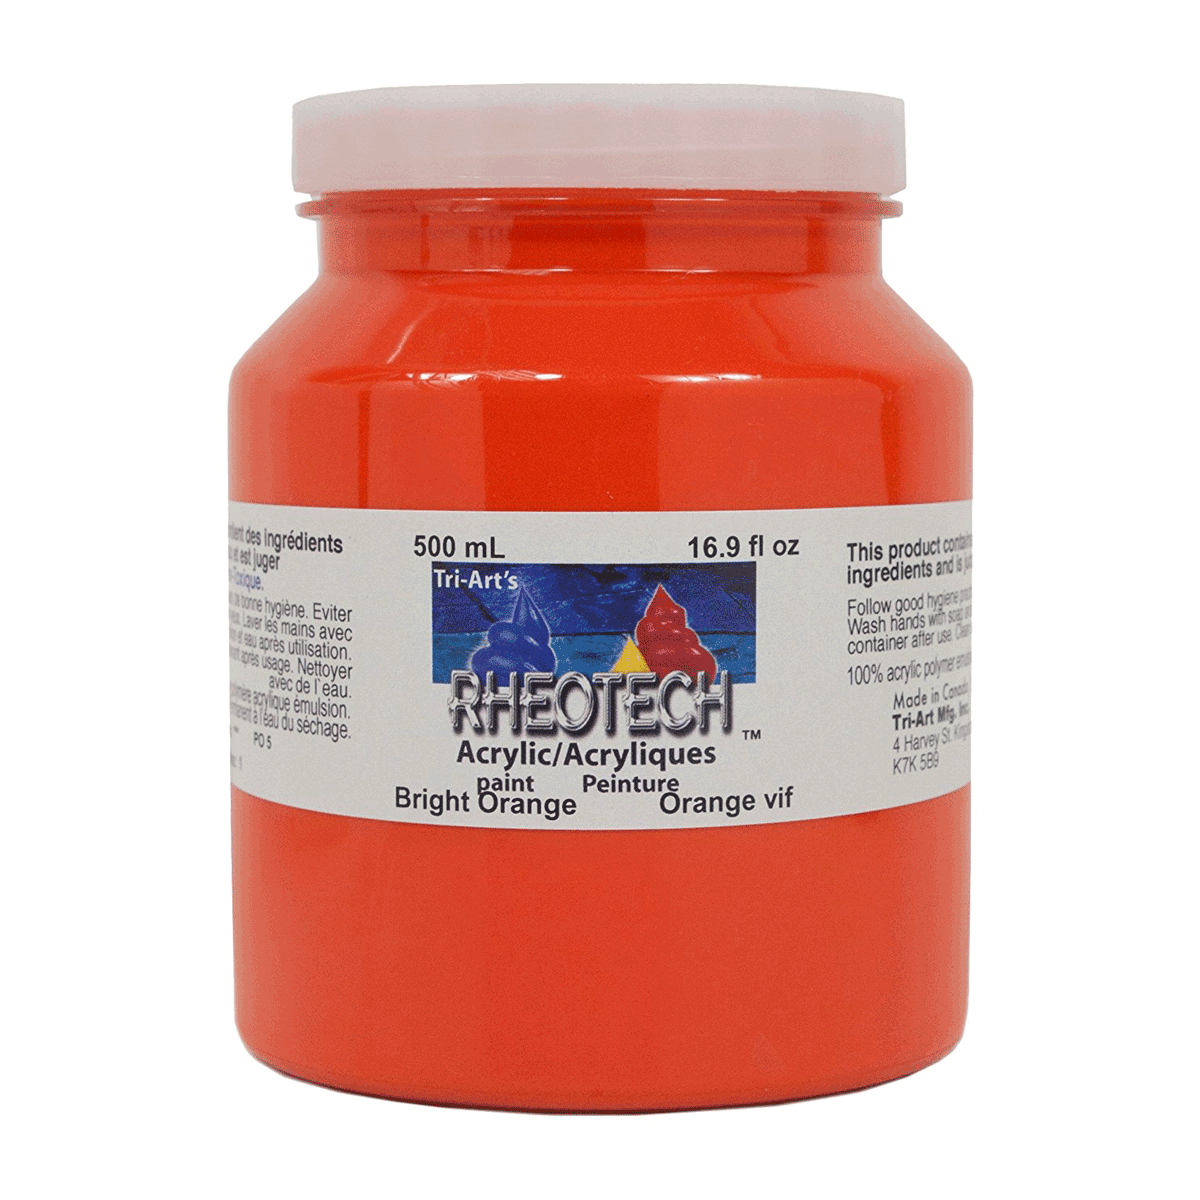 Rheotech Acrylic Bright Orange 500 ml Jar